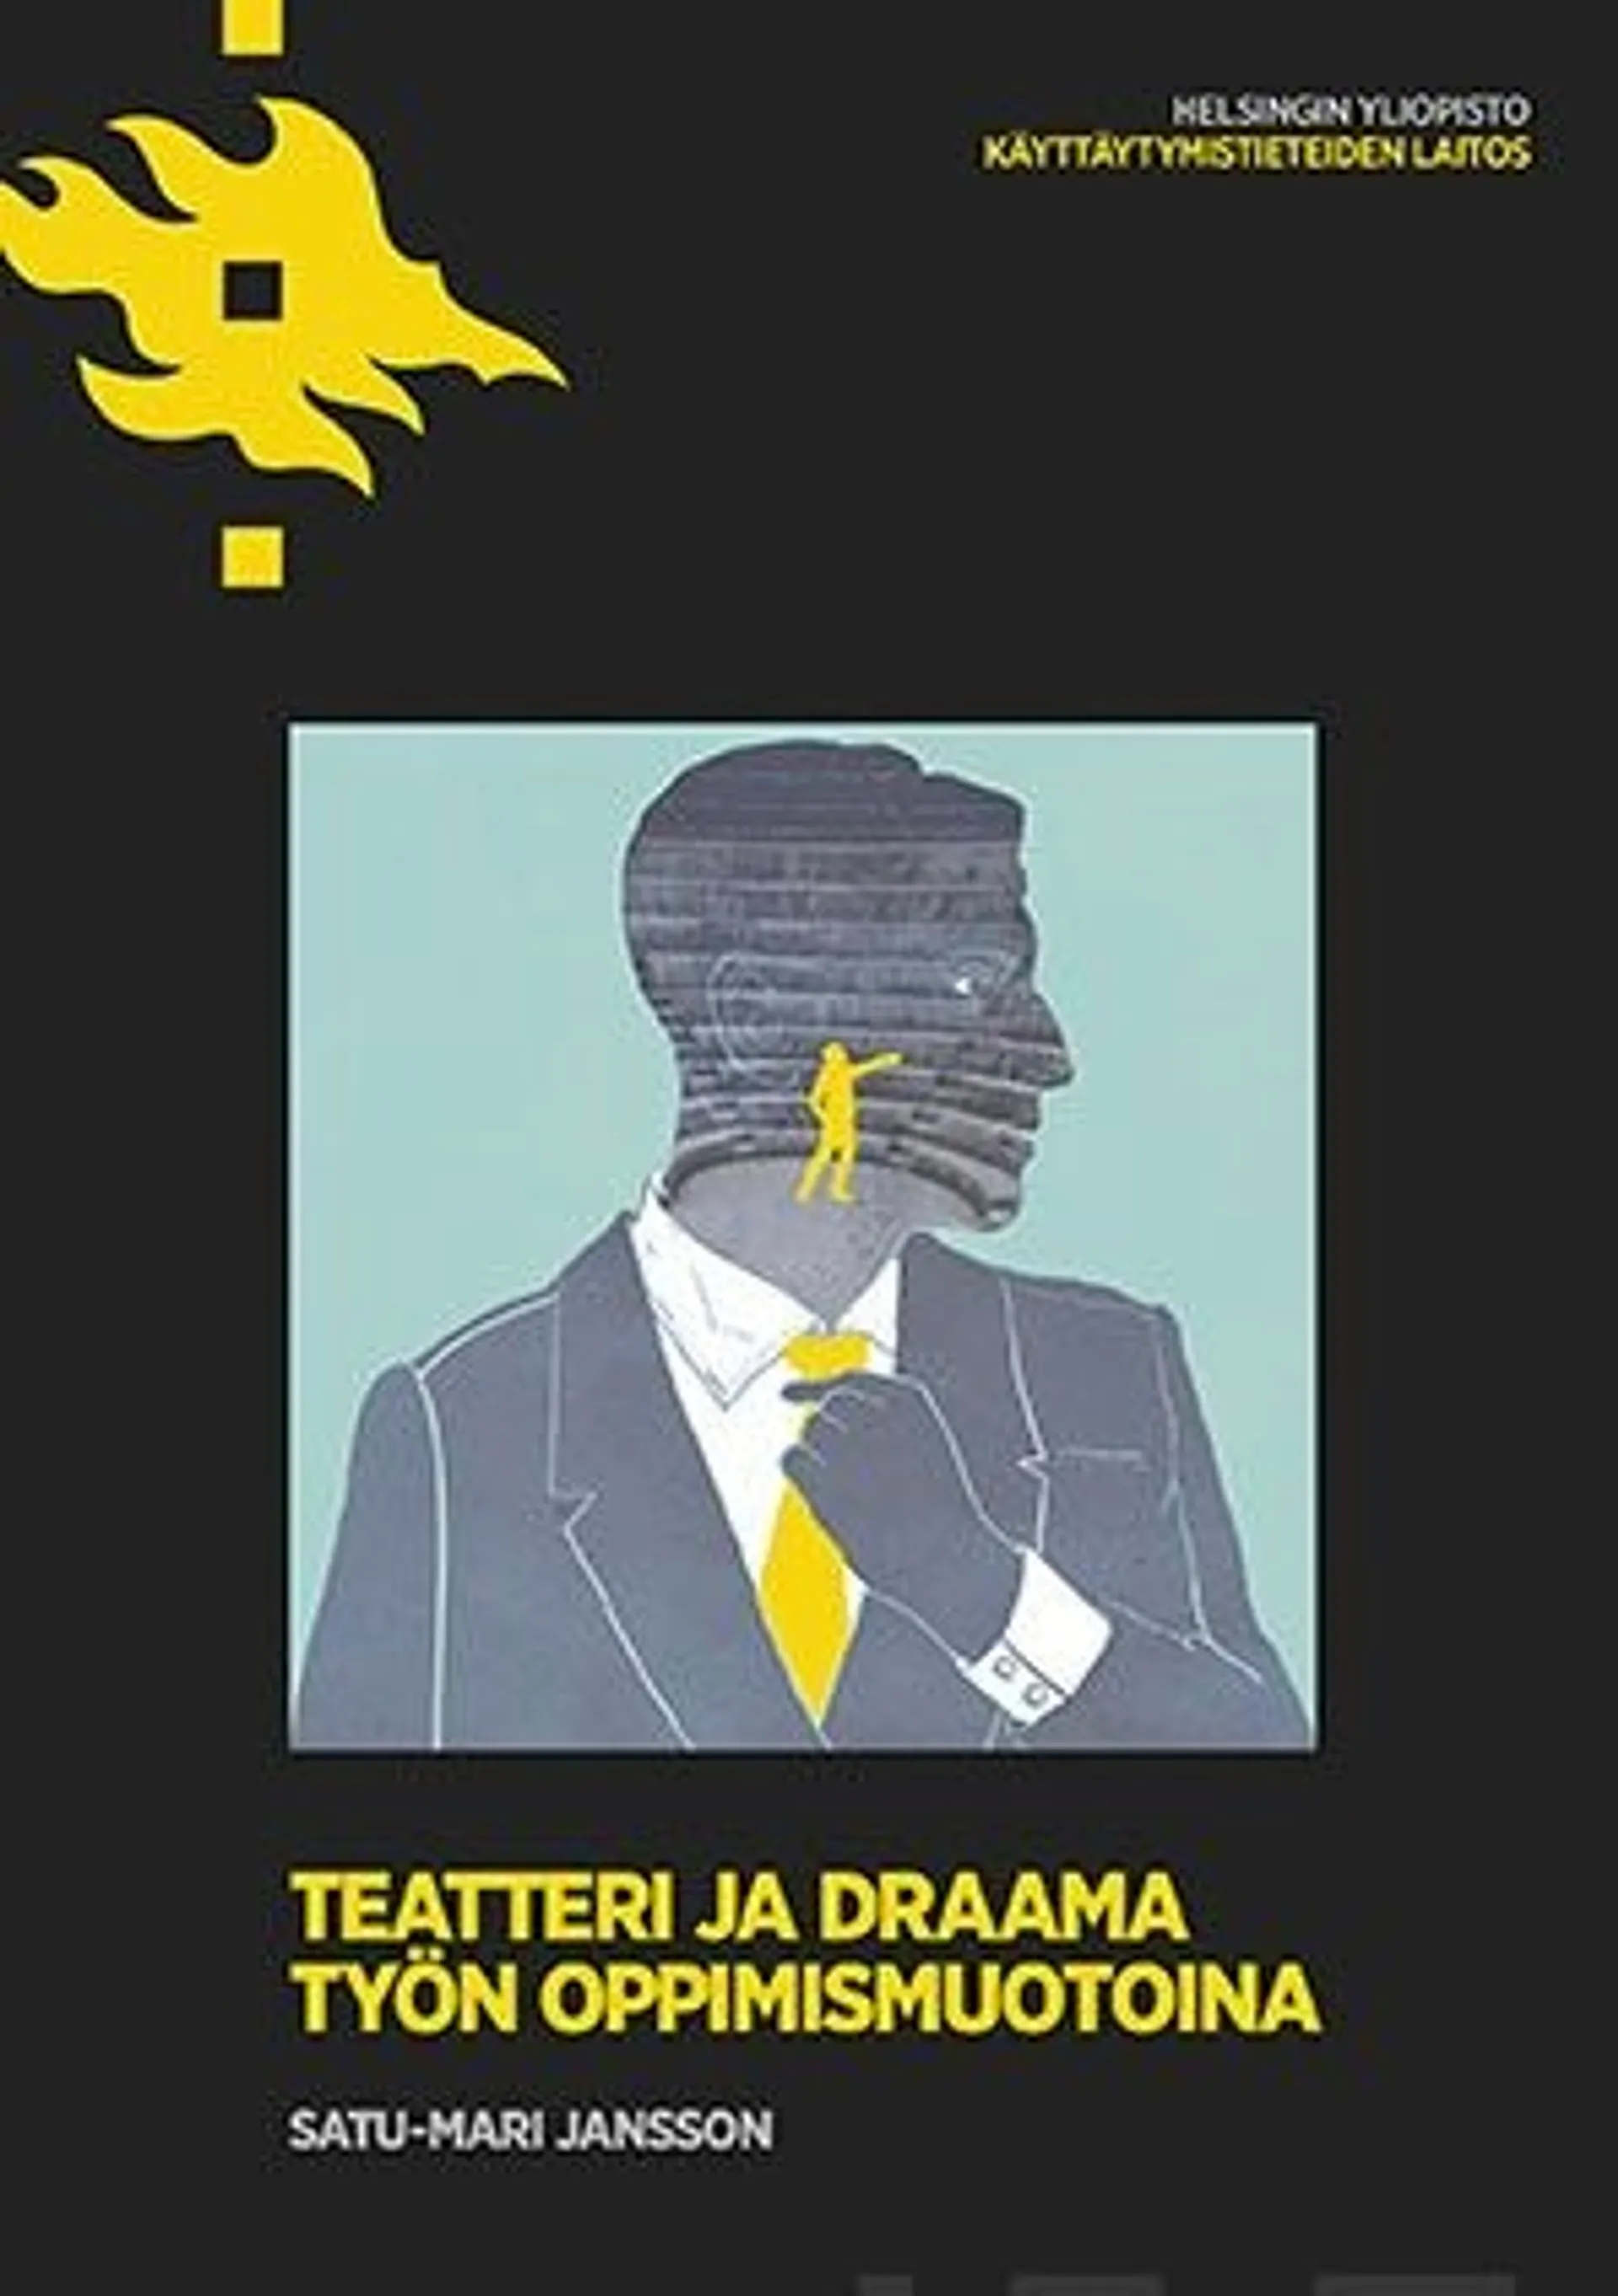 Jansson, Teatteri ja draama työn oppimismuotoina